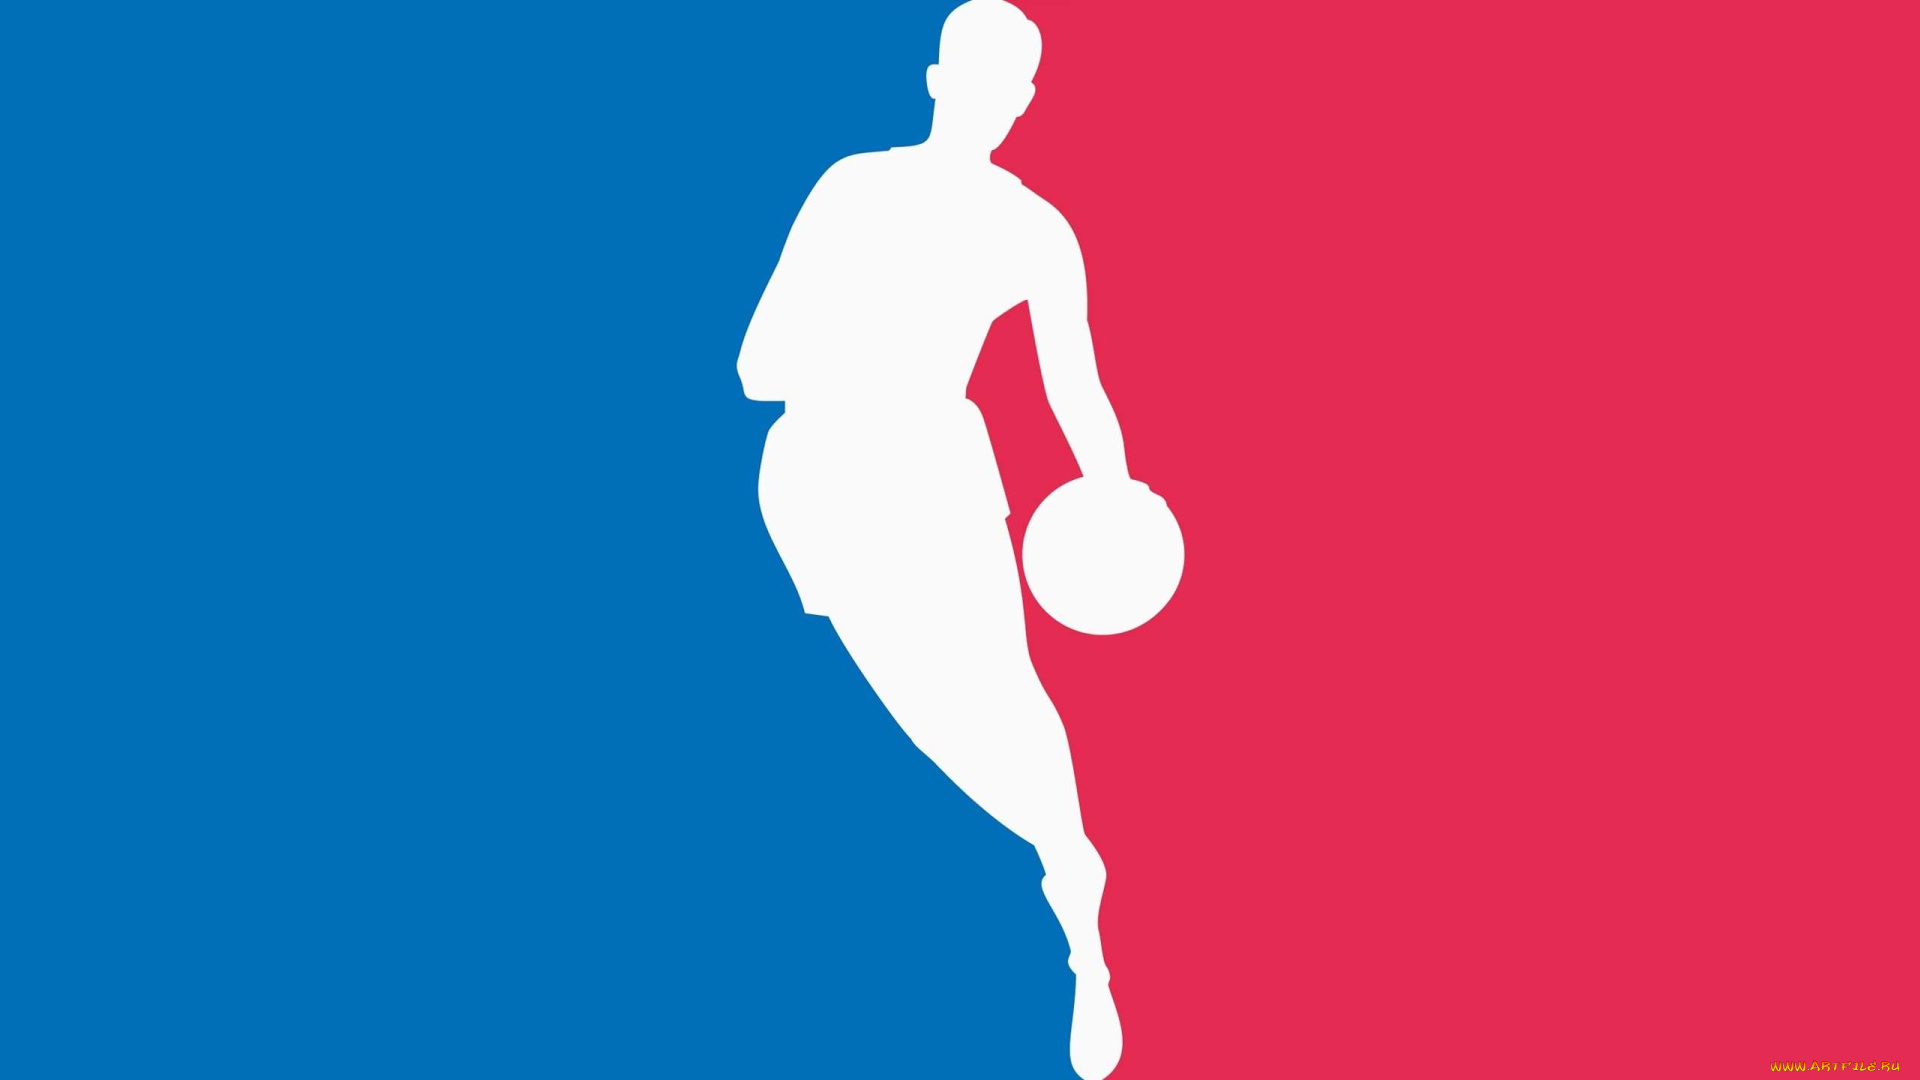 спорт, 3d, рисованные, баскетболист, красный, синий, силуэт, мяч